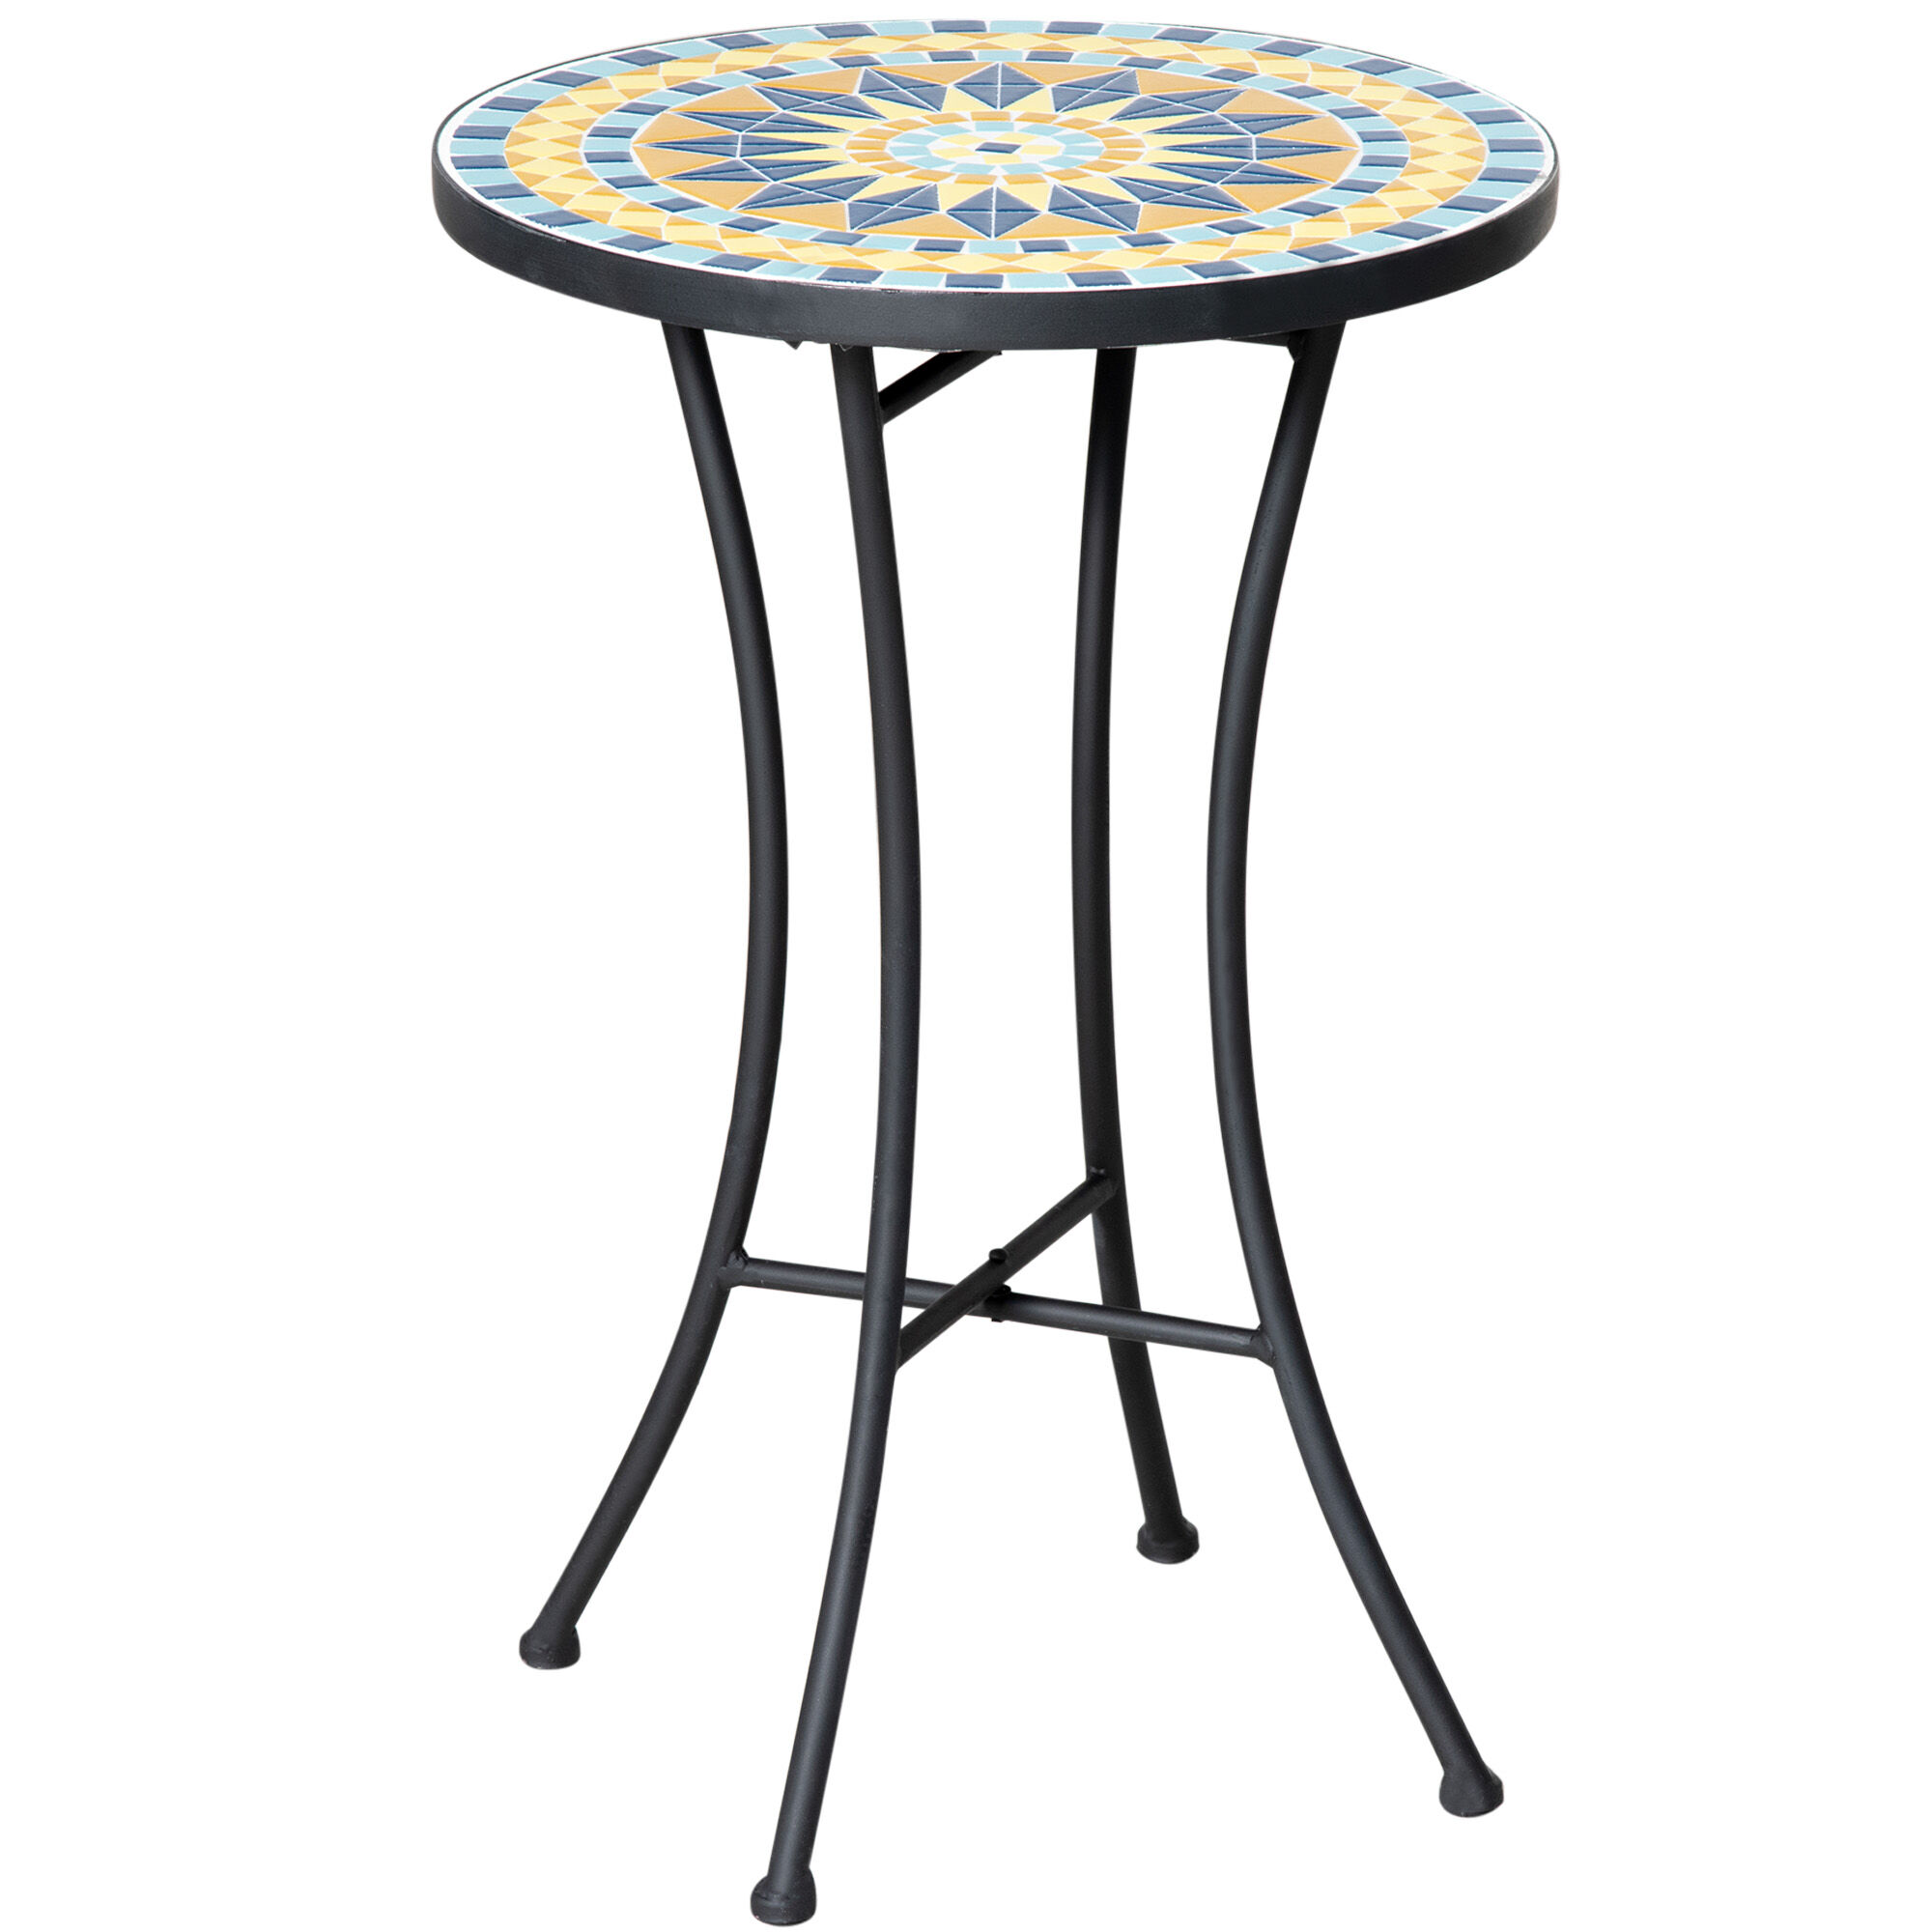 Outsunny Tavolino da Giardino in Metallo con Piano d'Appoggio a Mosaico in Ceramica, Ф35.5x53.5cm, Multicolore